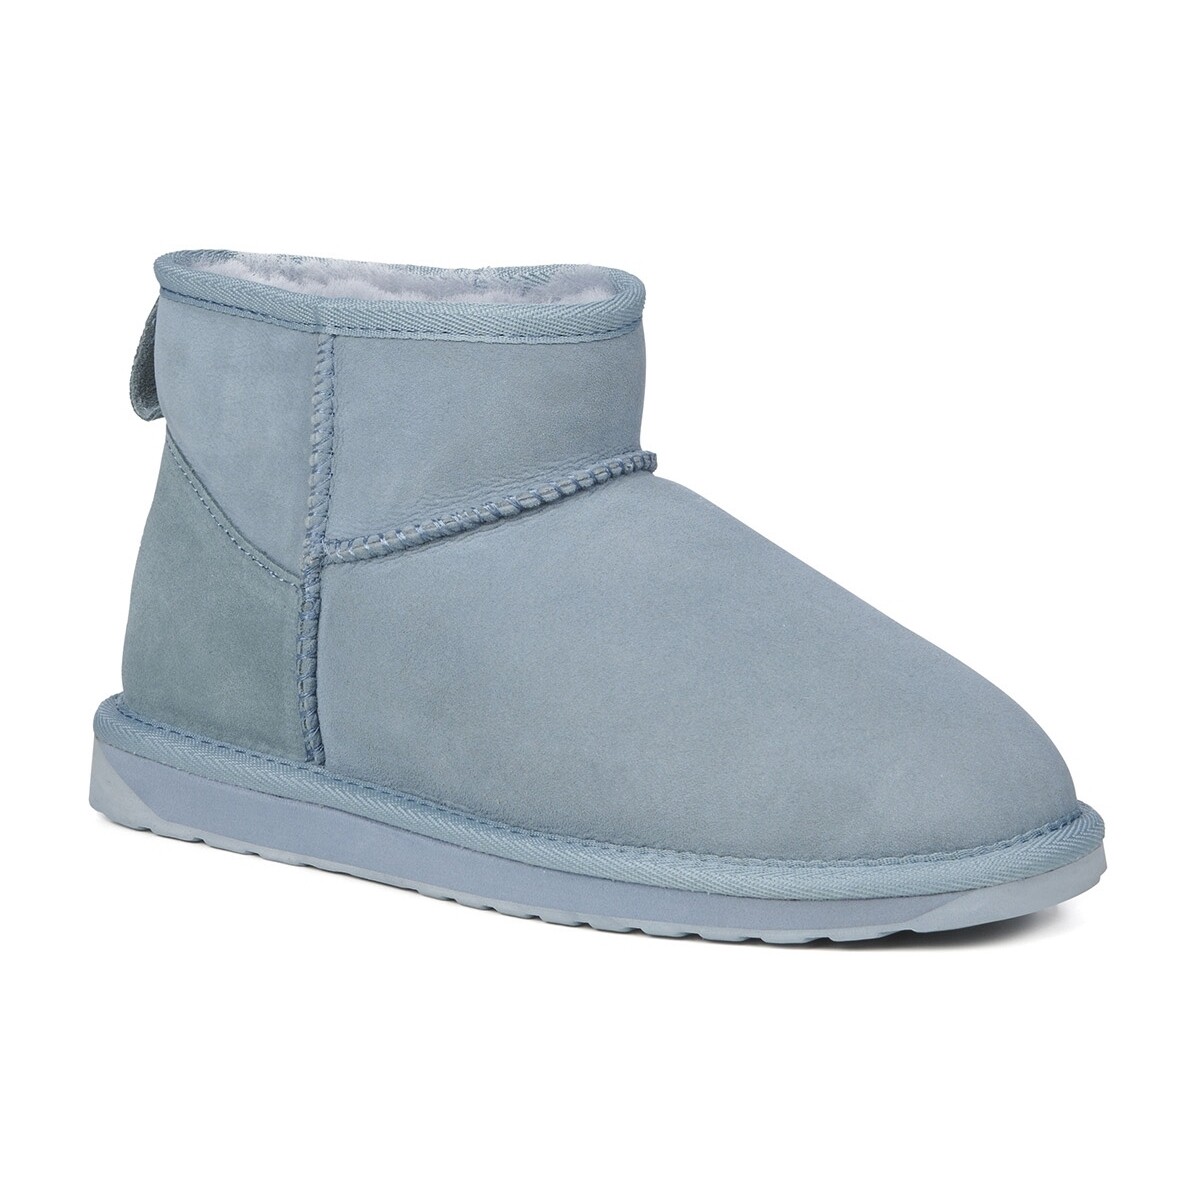 Schoenen Dames Enkellaarzen EMU W10937-SAGE Blauw